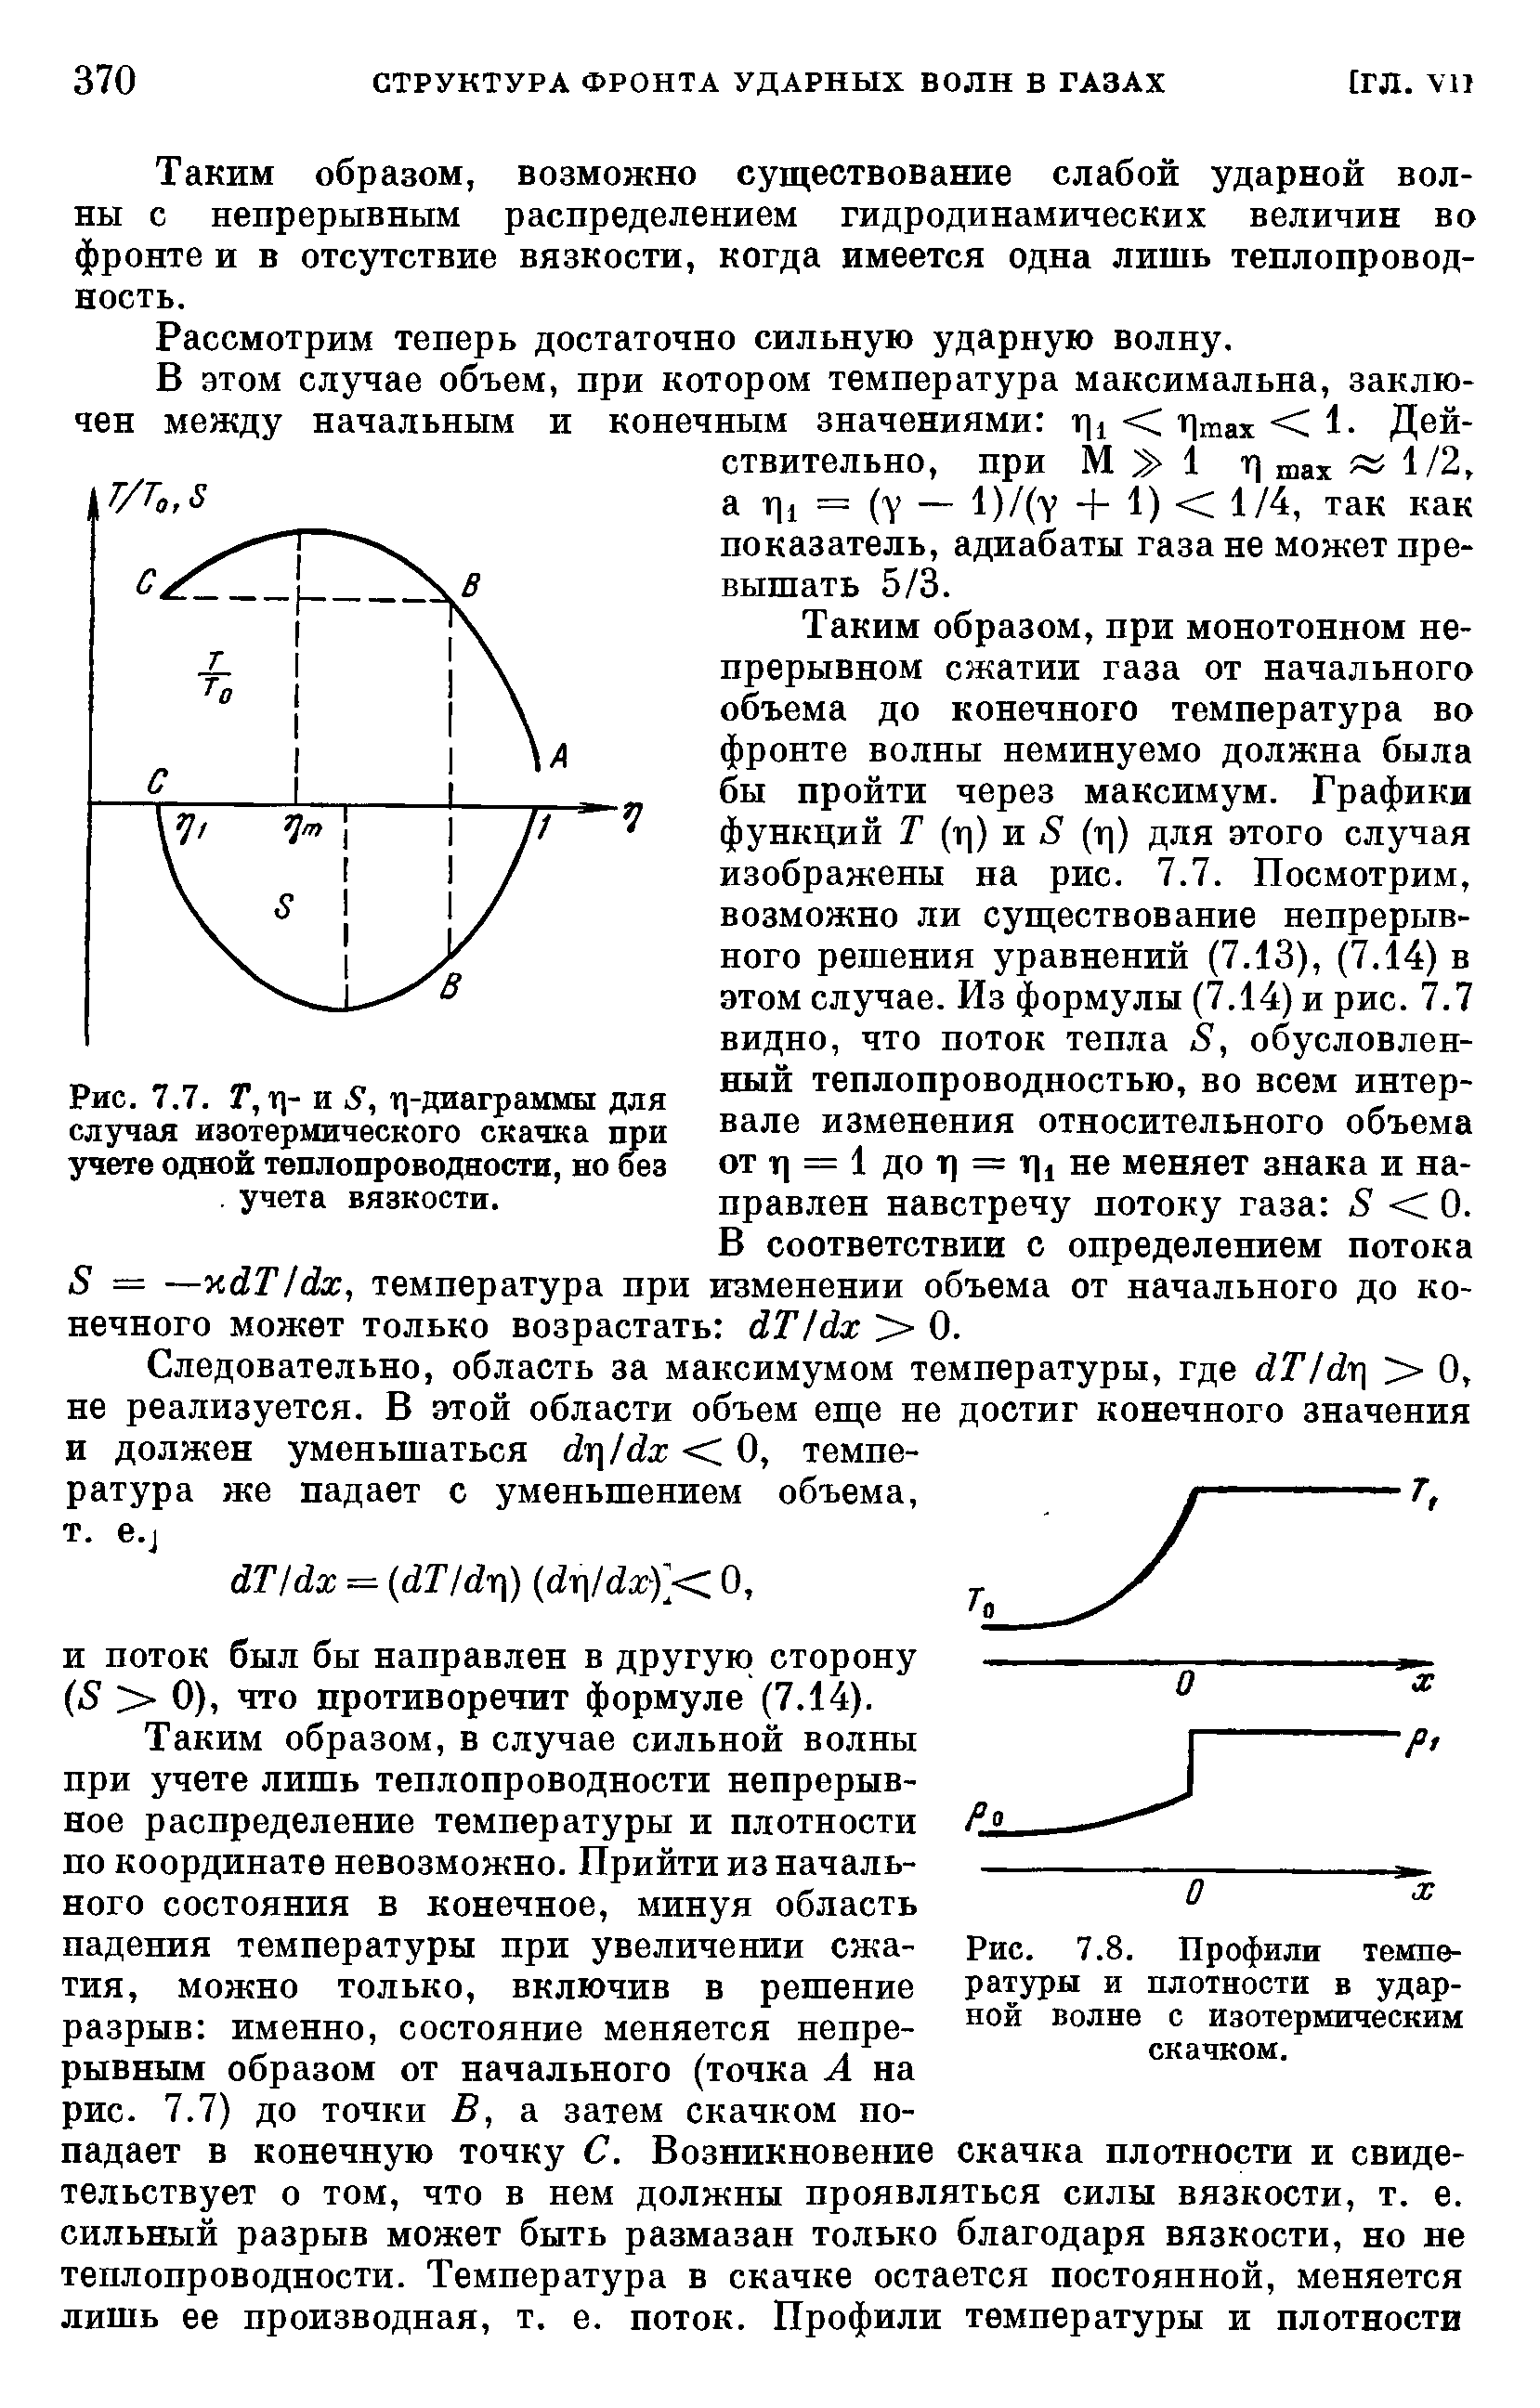 Рис. 7.7. Т, т)- и б", т)-диаграммы для случая изотермического скачка щ)и учете одной теплопроводности, но без. учета вязкости.
